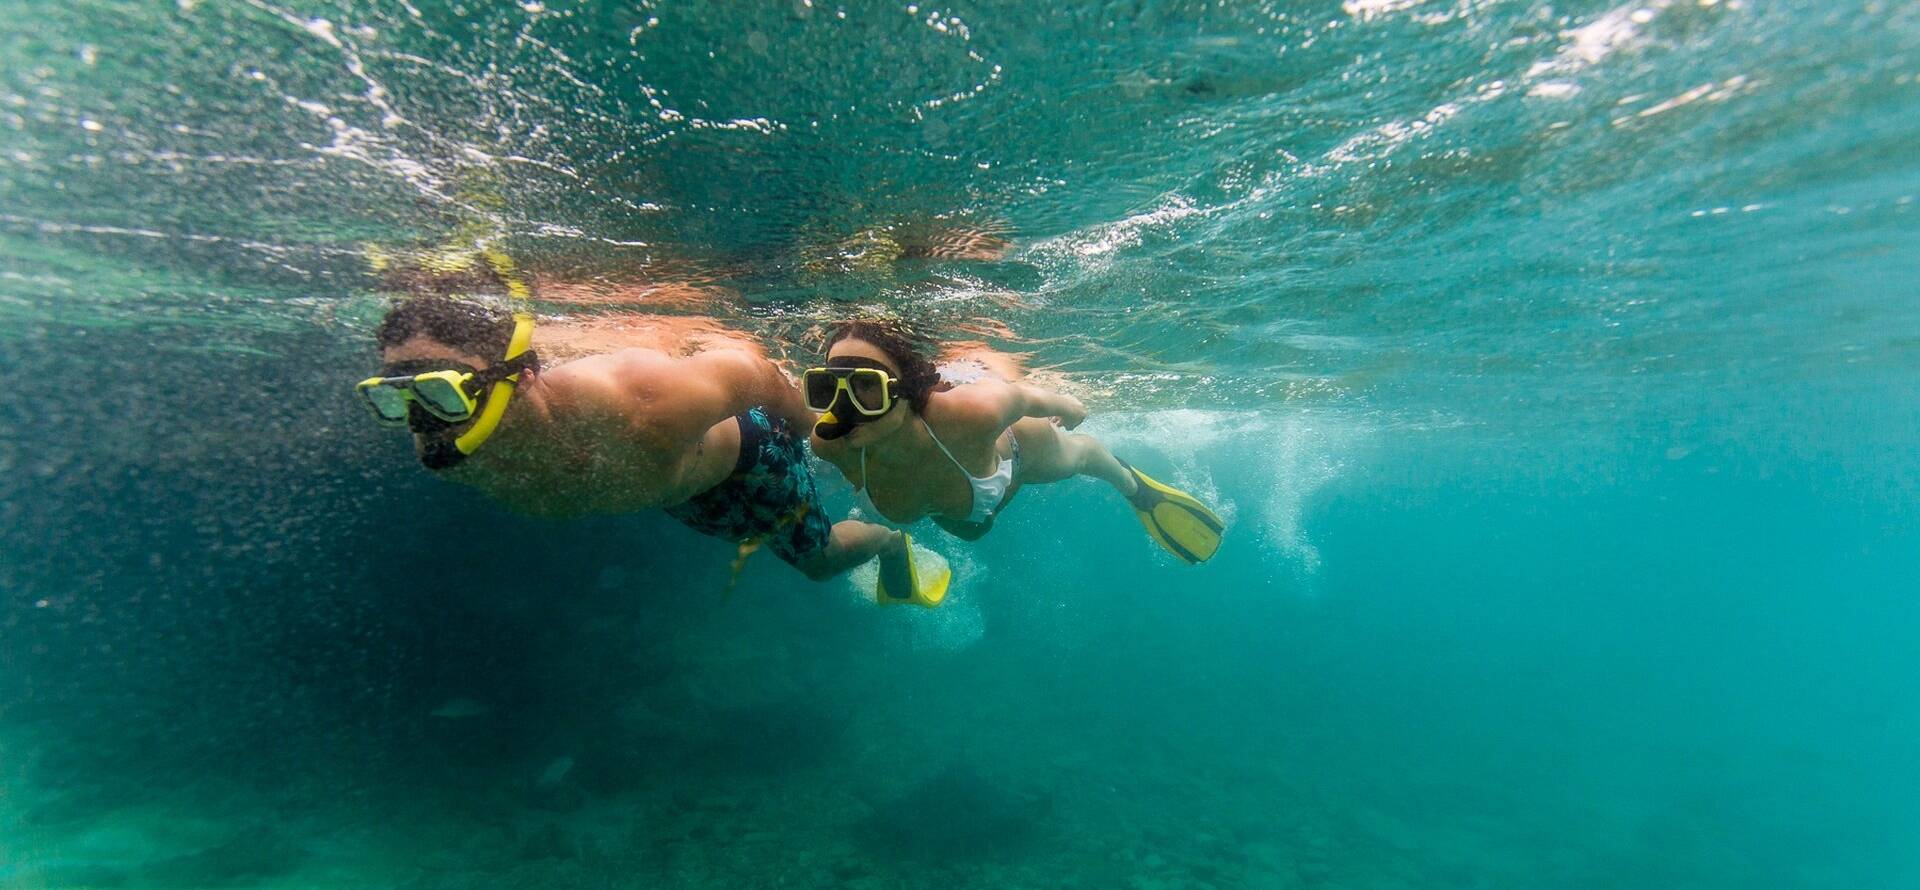 Snorkeling excursion